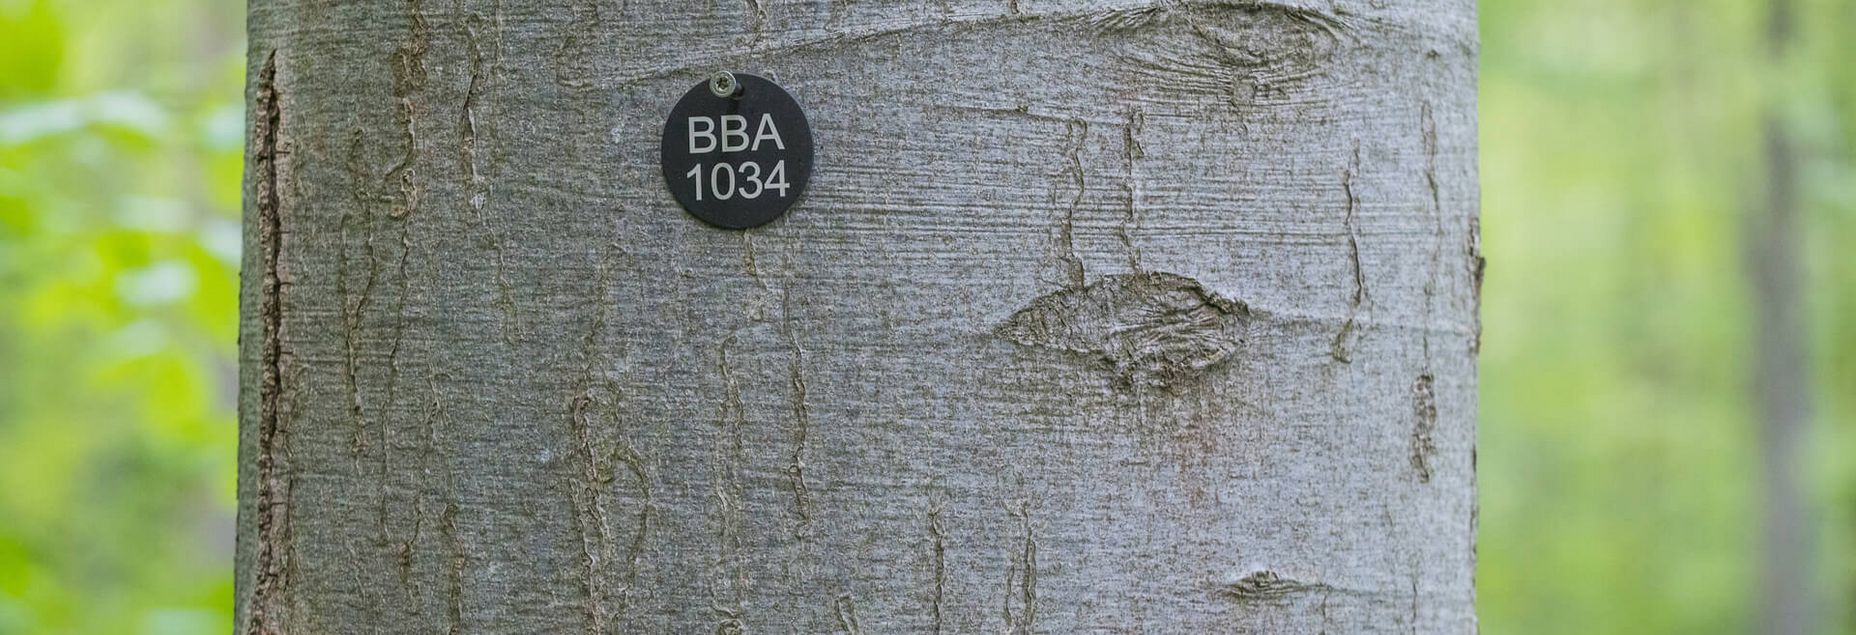 Baum BBA 1034 - Plakette